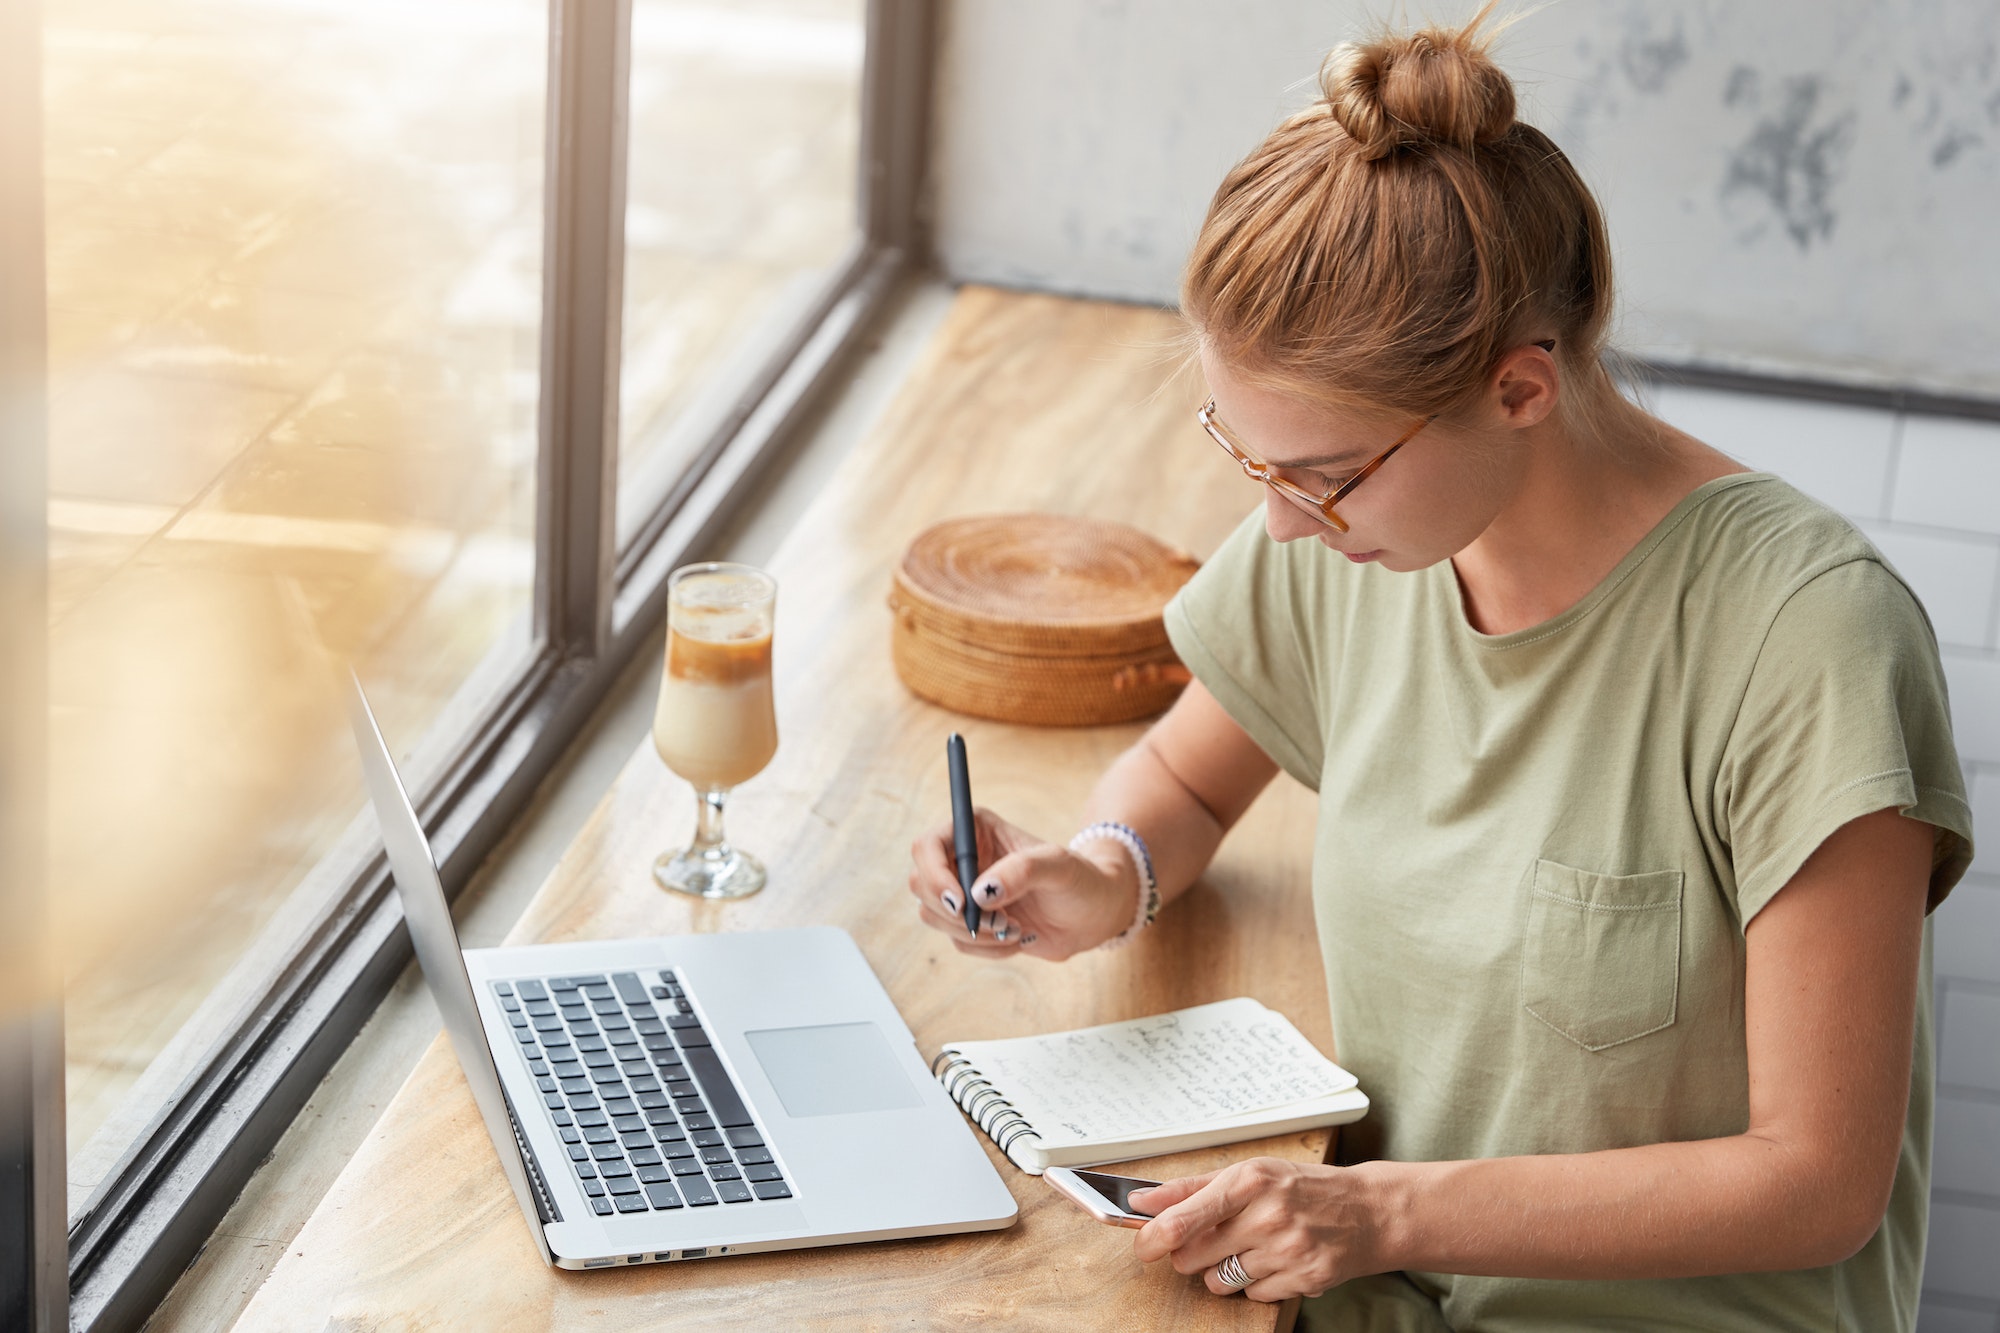 Une jeune femme devant son ordinateur avec un café en train d'écrire sur un bloc note, comme s'il réfléchissait à comment faire une stratégie pour un site internet